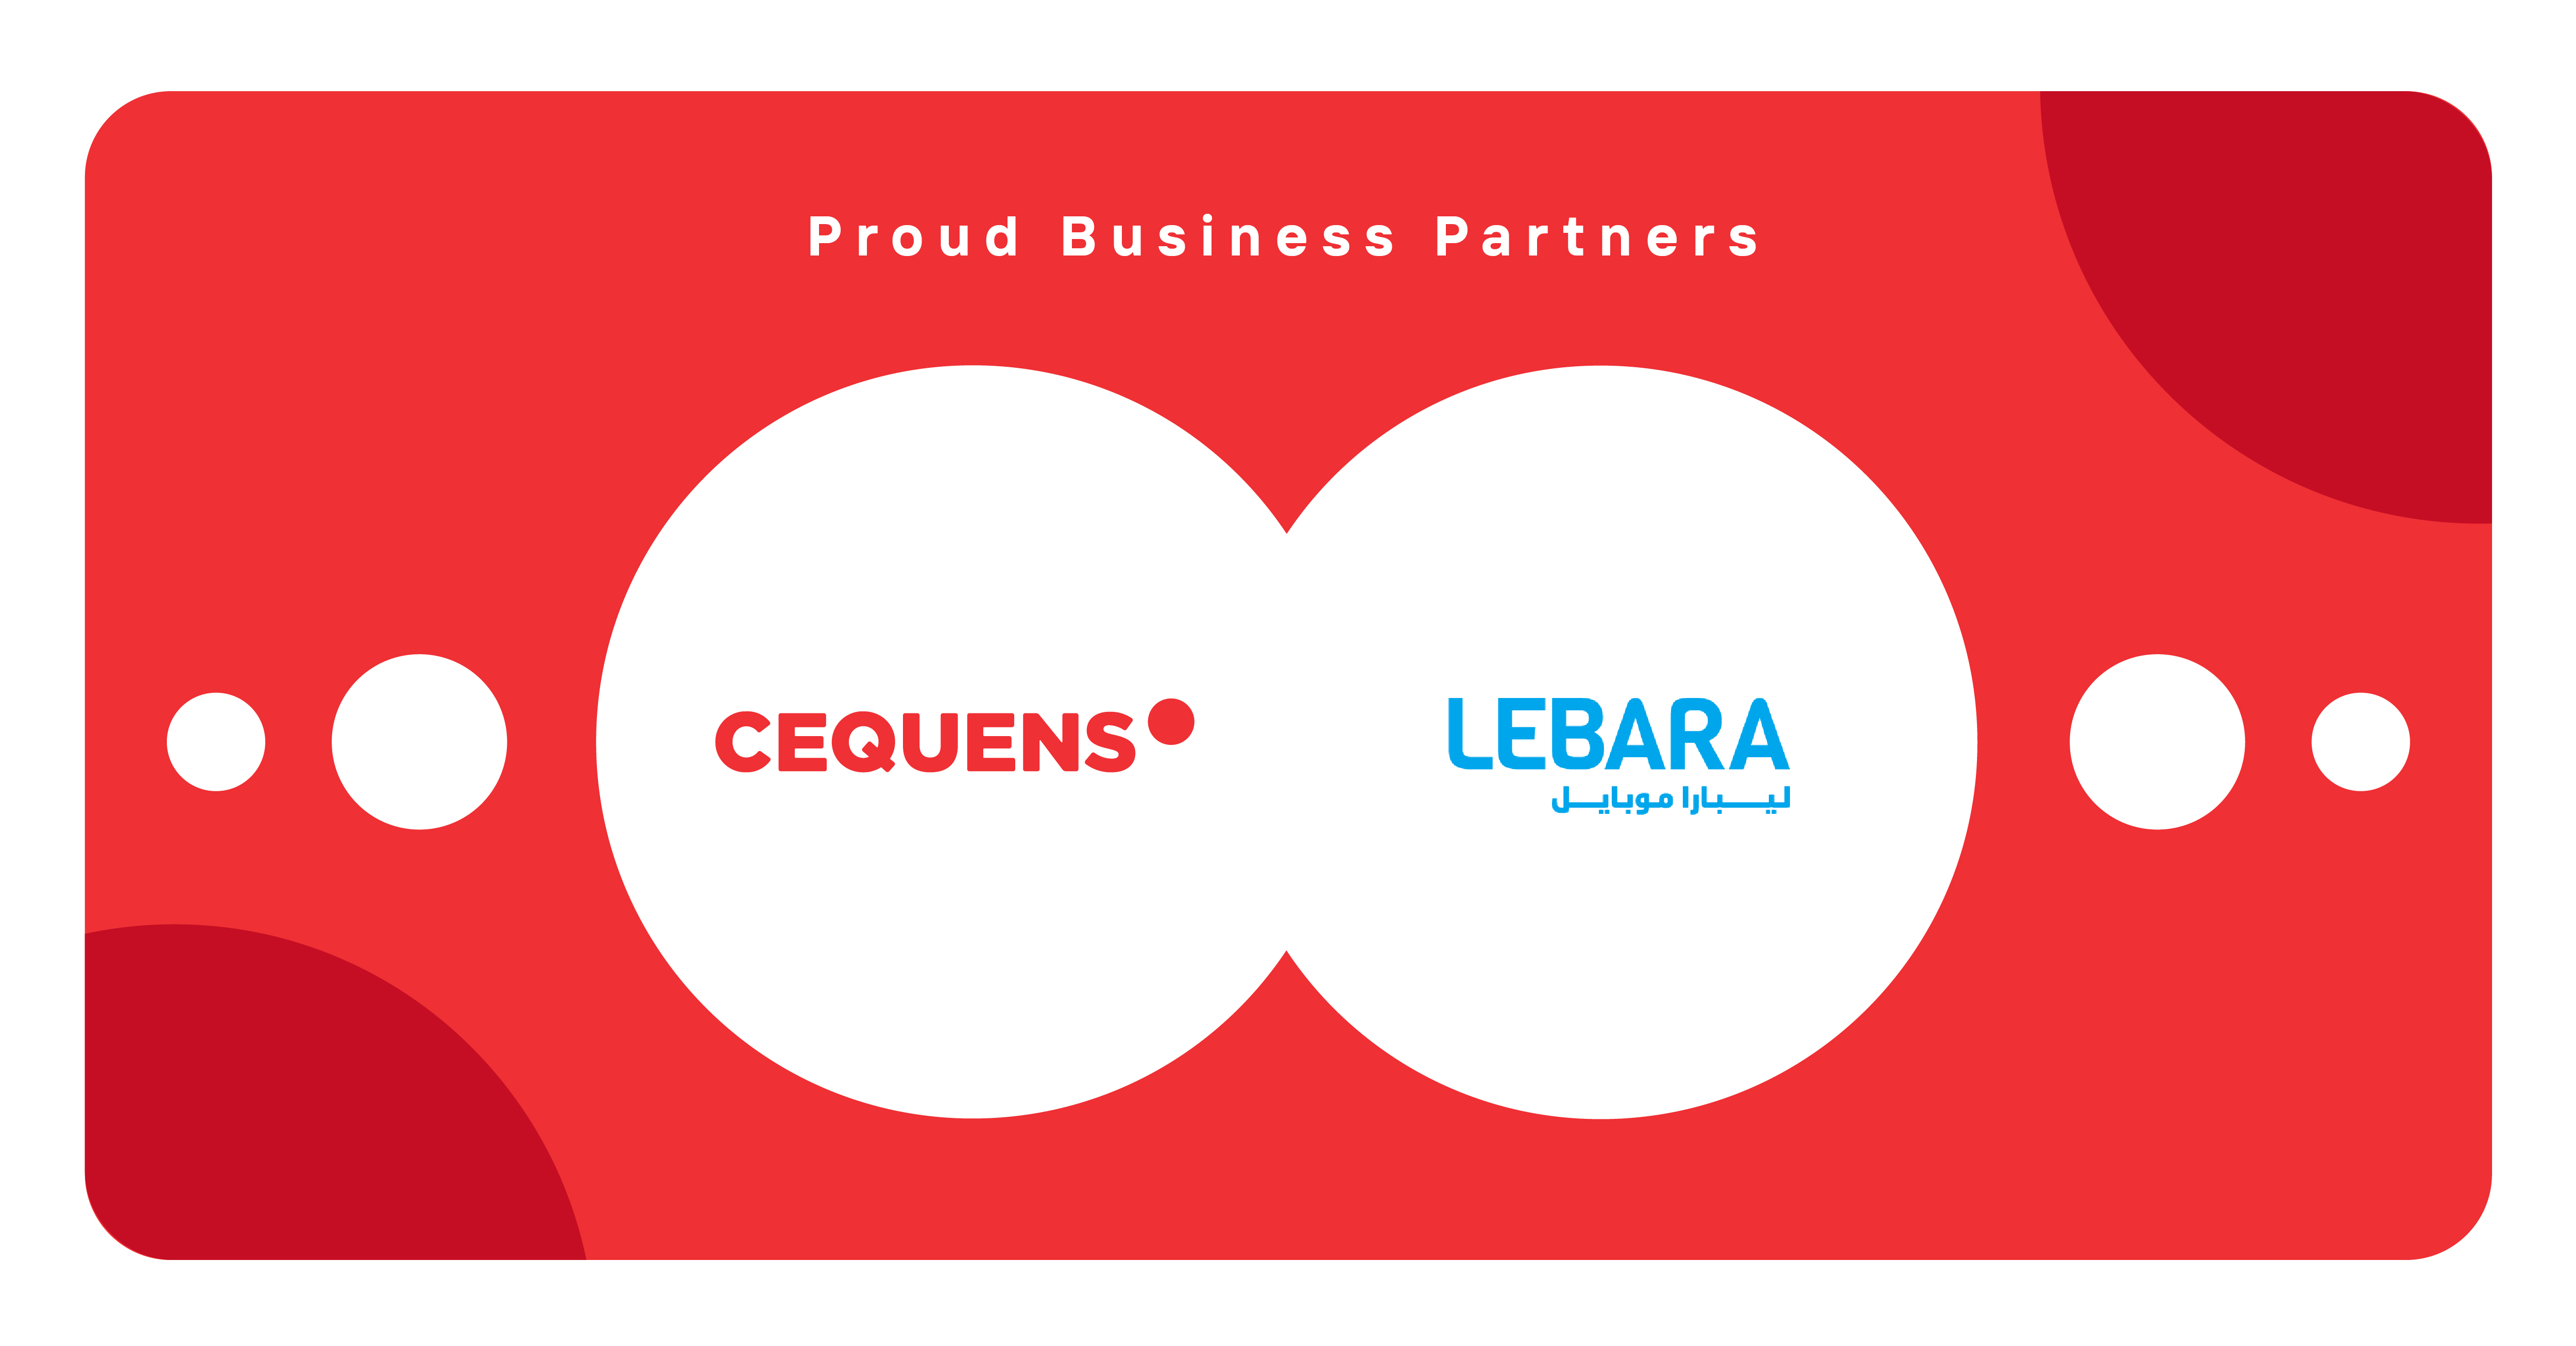 CEQUENS and Lebara logos